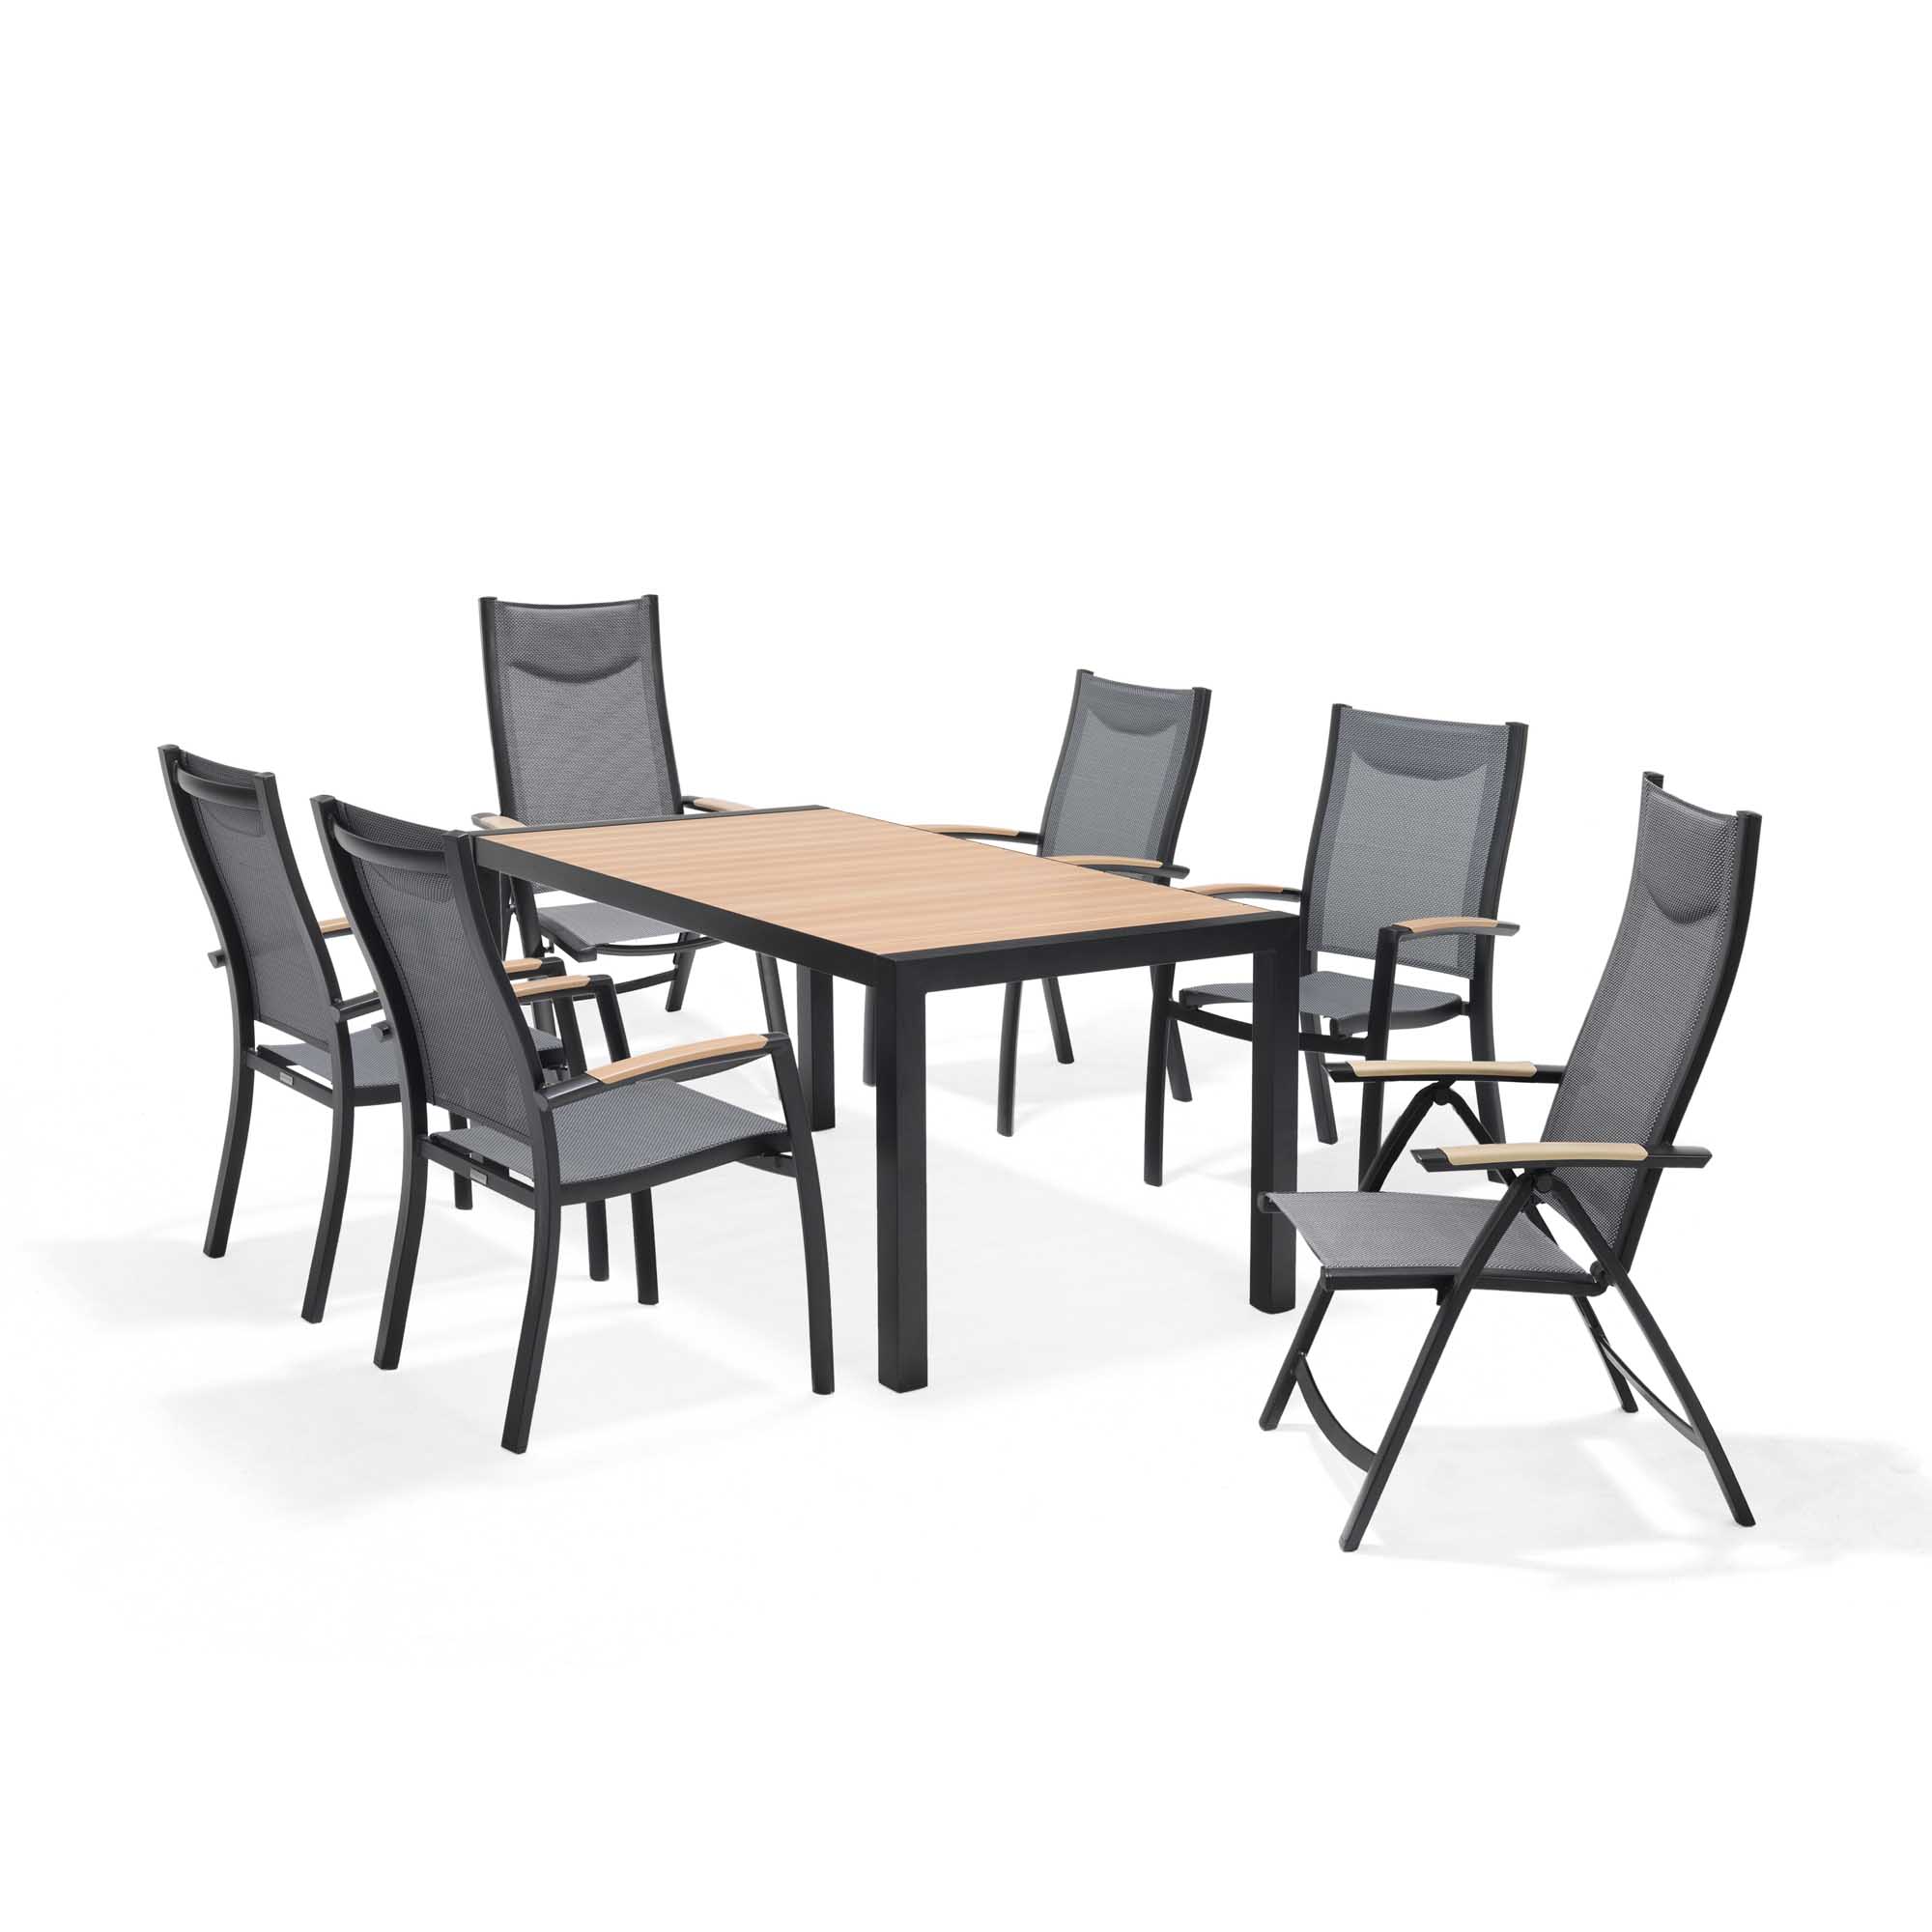 Lifestyle Garden Panama spisegruppe Teak/svart 4 stablestoler, 2 posisjonsstoler & bord 160x90 cm